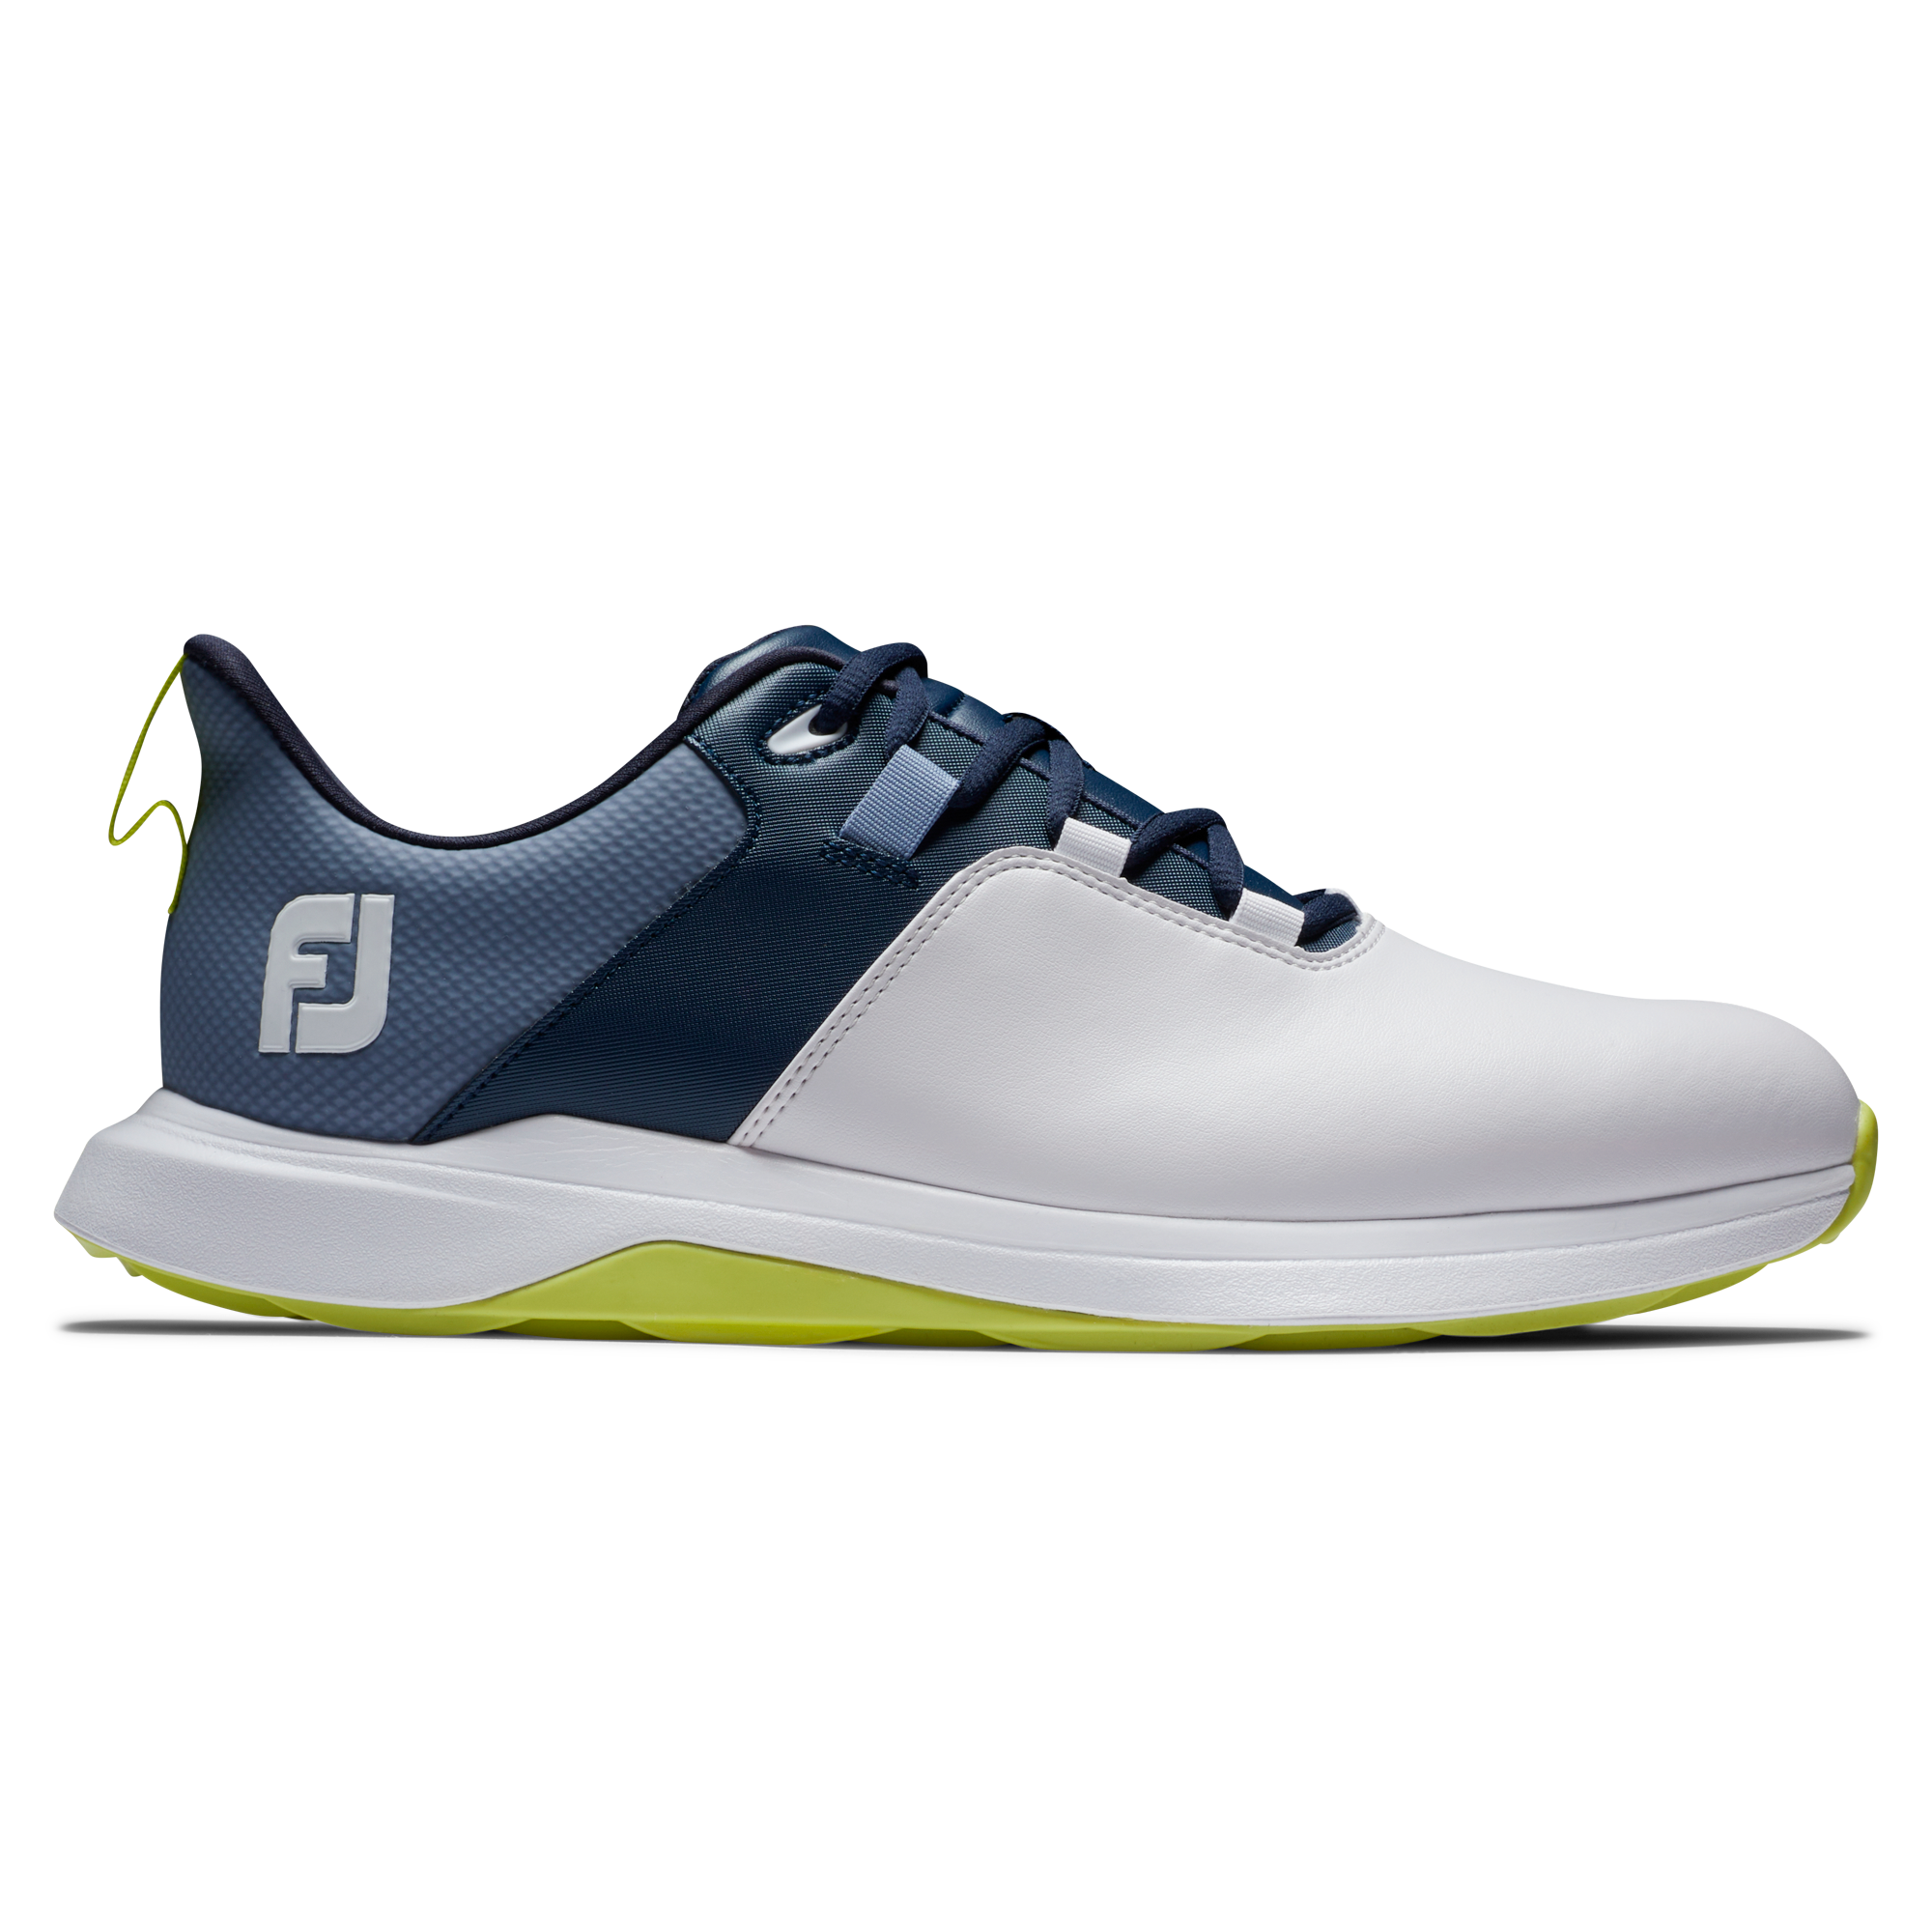 FootJoy ProLite pánské golfové boty, bílé/tmavě modré, vel. 9 UK